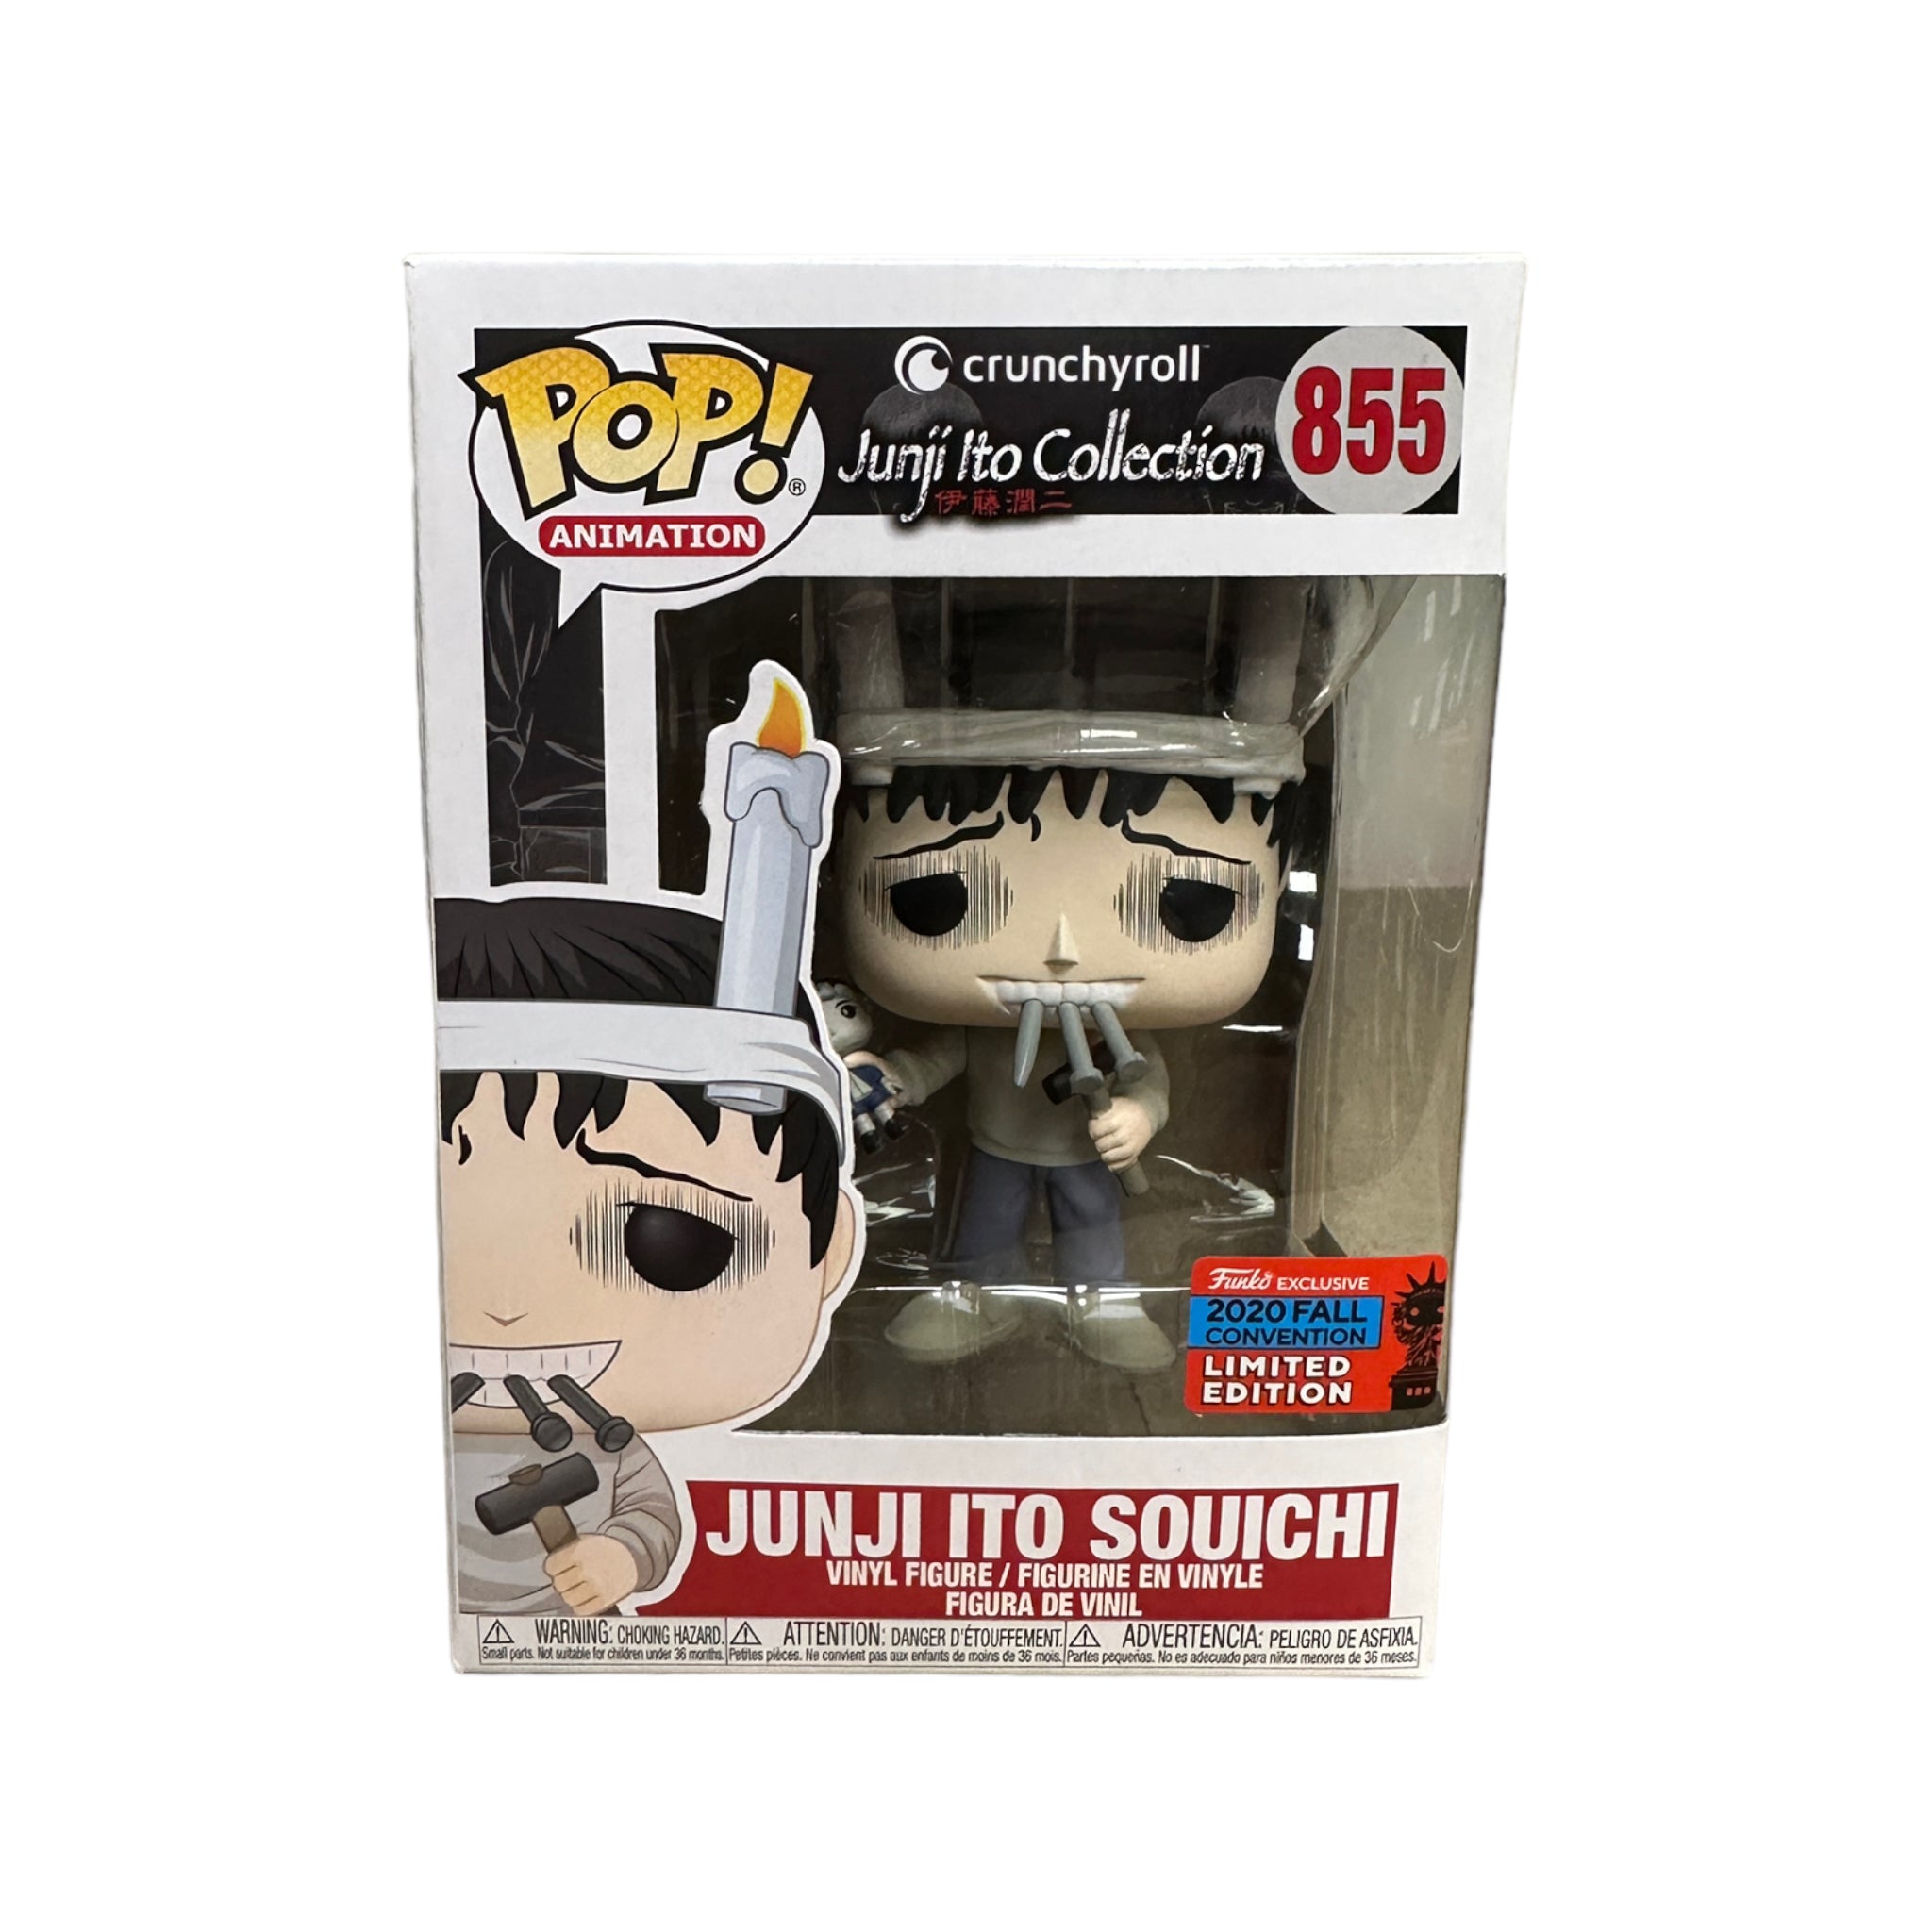 Junji Ito Souichi #855 Funko Pop! - Junji Ito Collection - NYCC 2020 Shared Exclusive - Condition 9/10